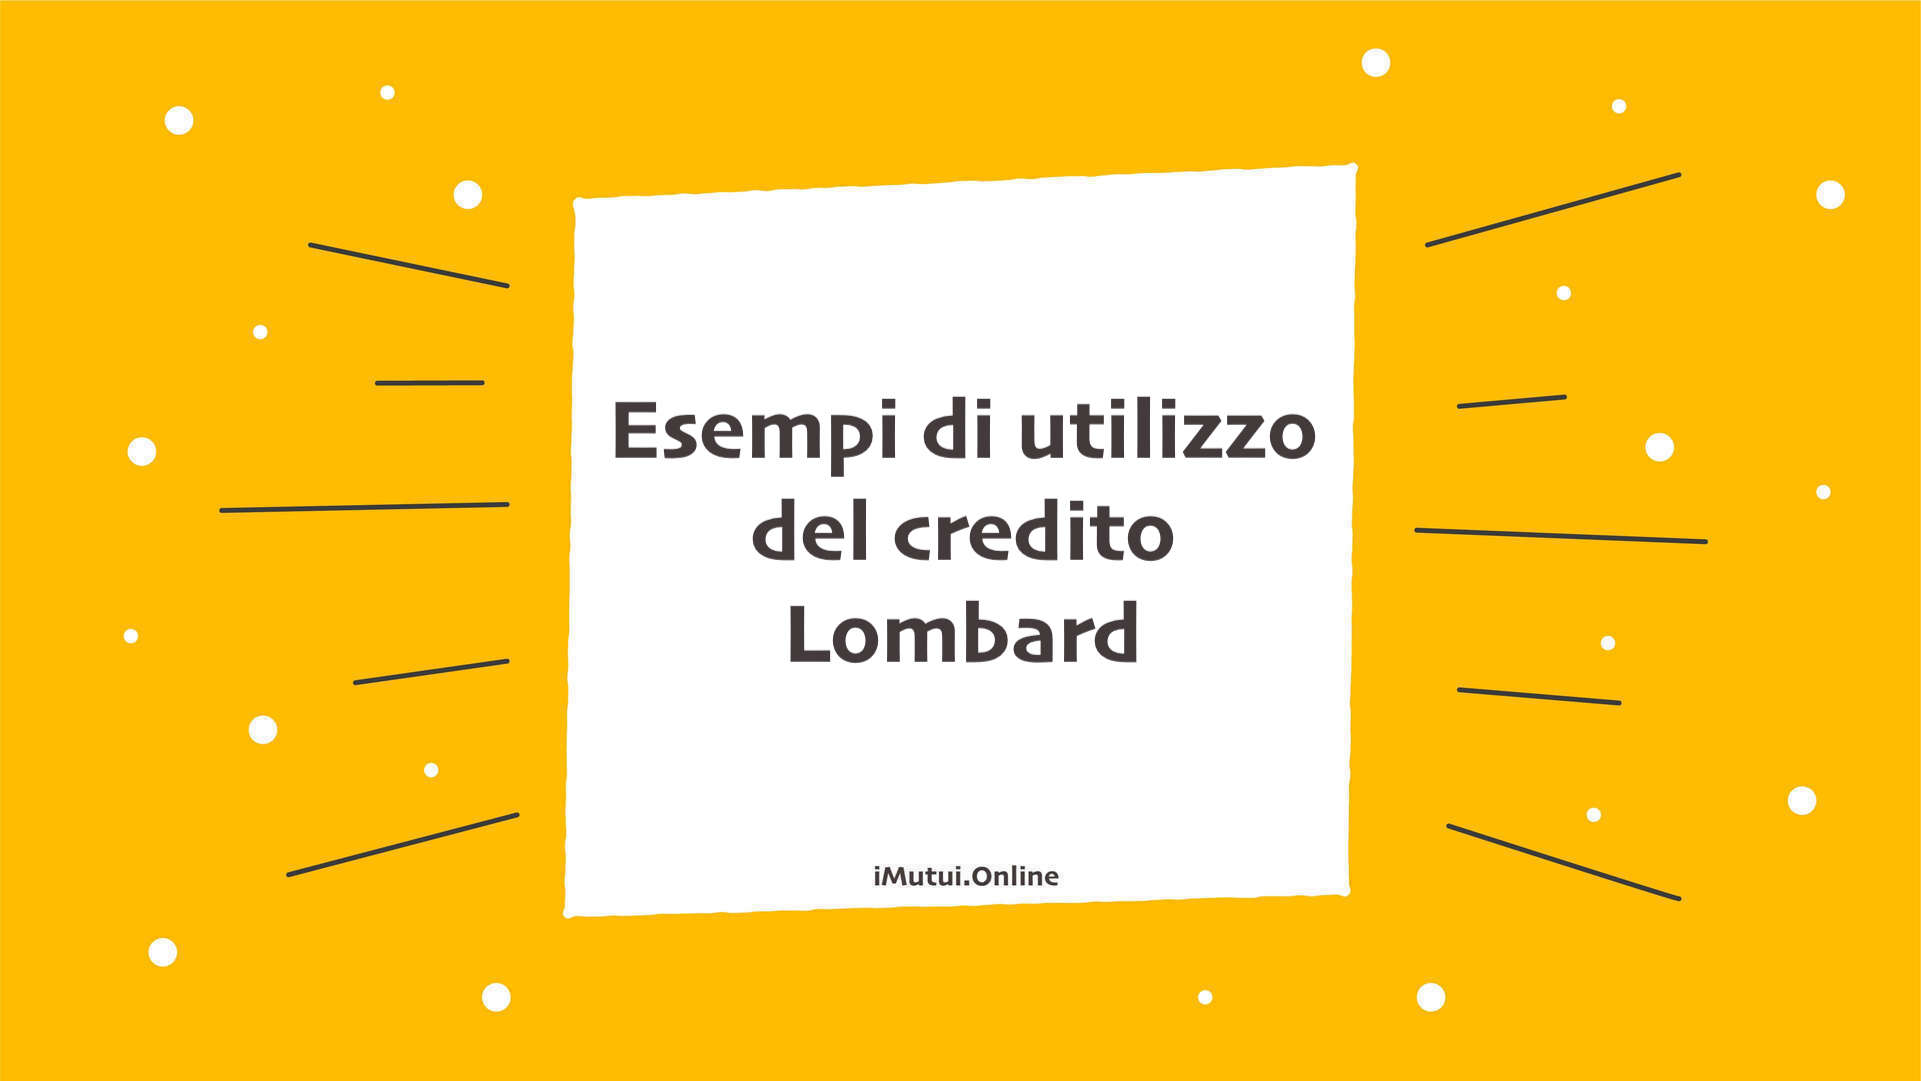 Esempi di utilizzo del credito Lombard